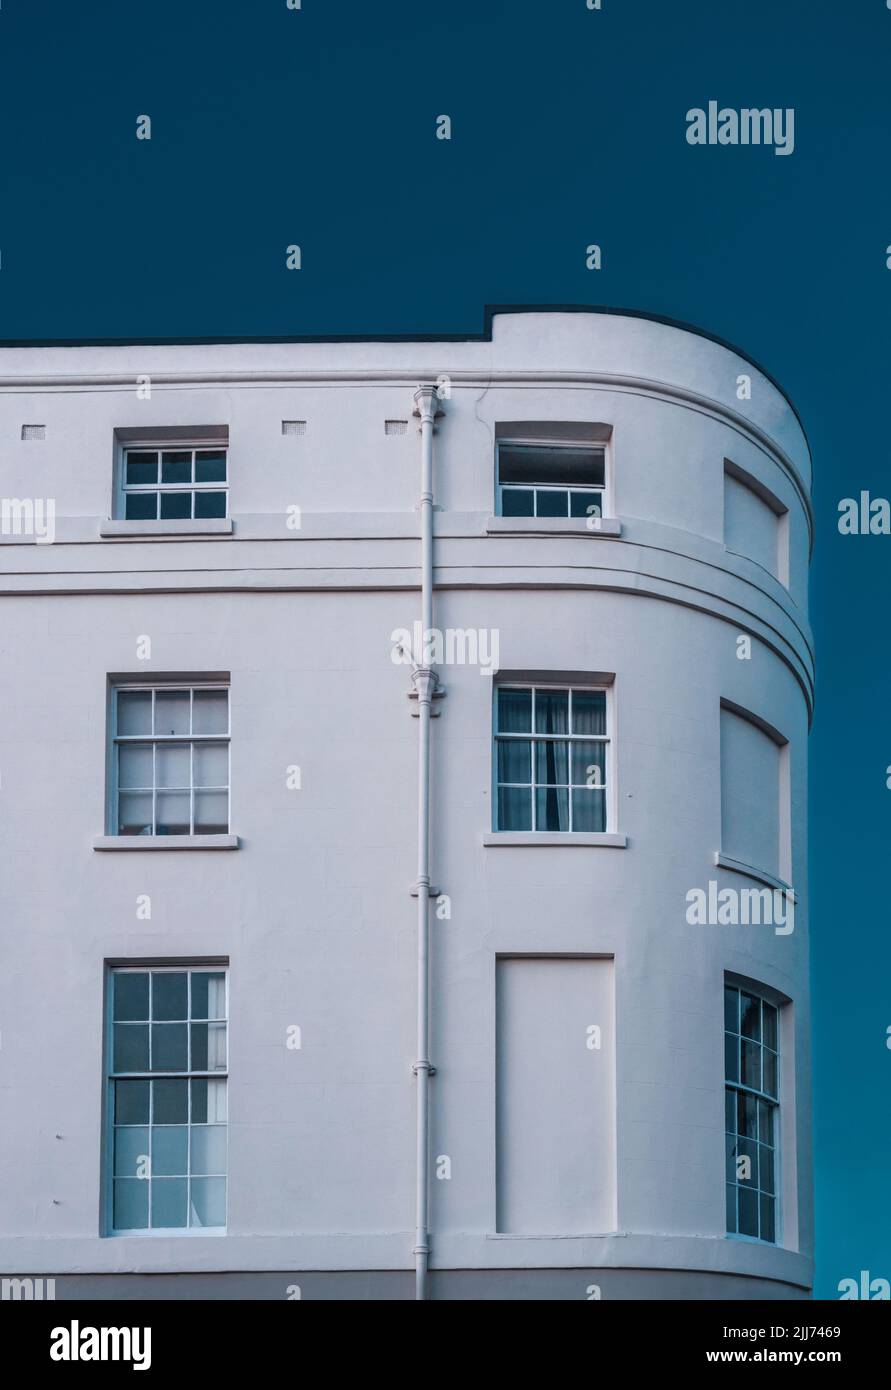 19th secolo tardo georgiano architettura residenziale britannico edificio con facciata bianca lungo Portland Terrace a Southampton, Hampshire, Inghilterra, Regno Unito Foto Stock